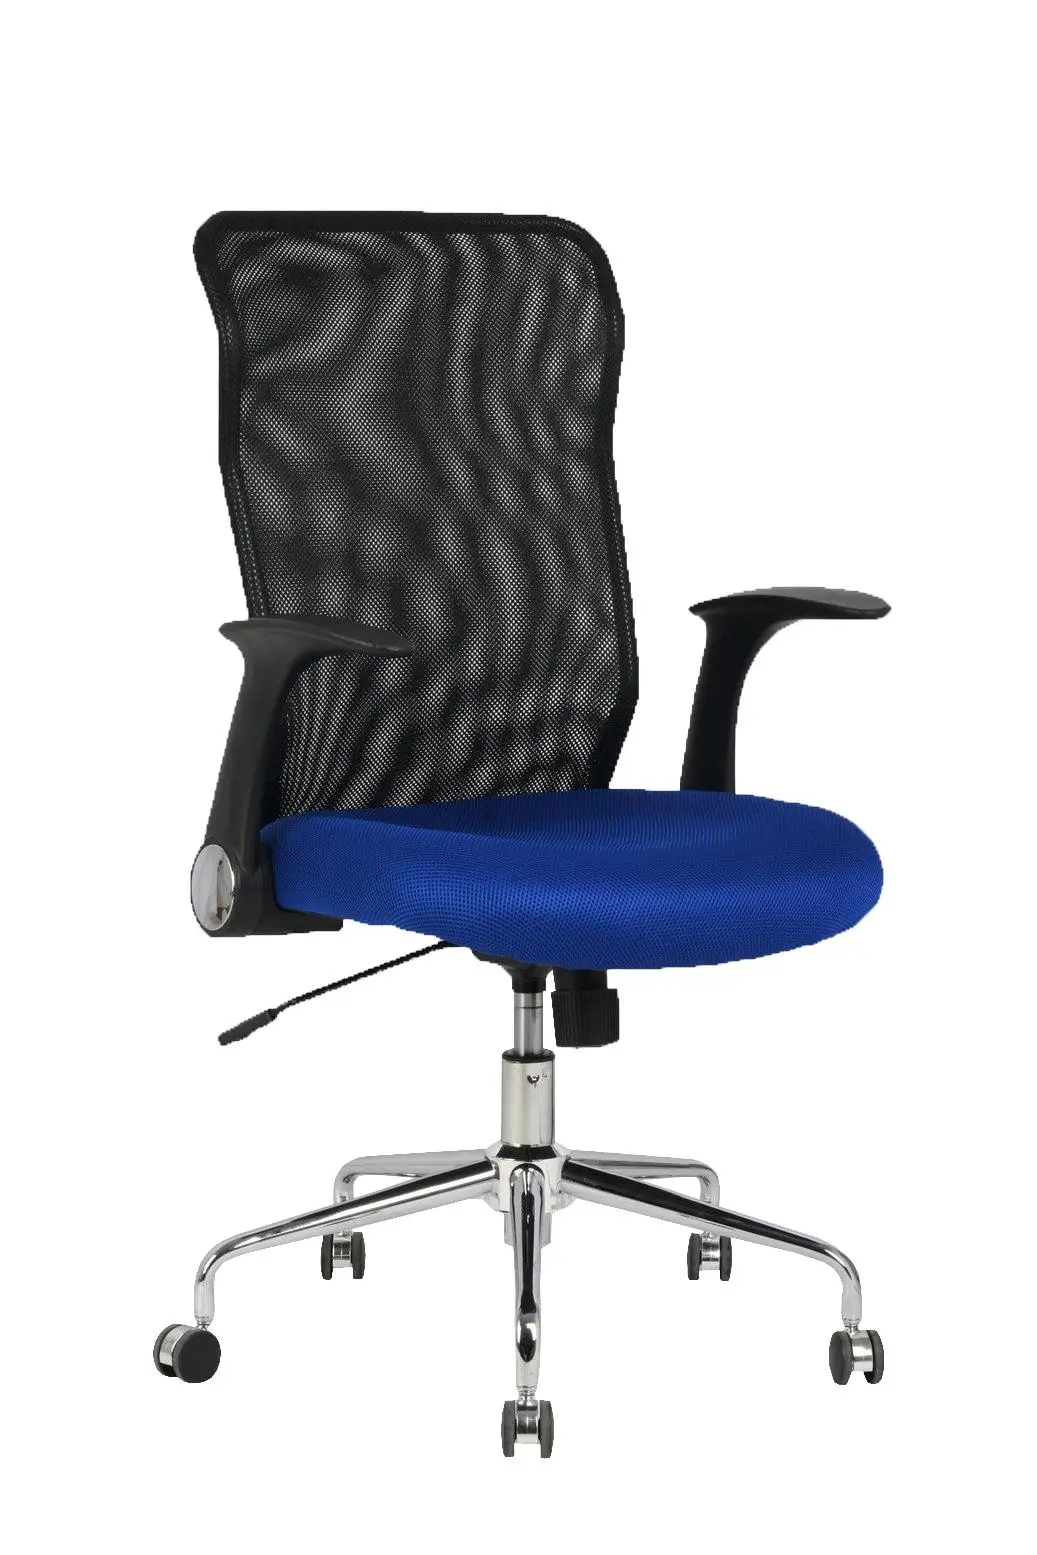 Офисный стол стула Эргономичный с механизмом наклона дома, руки выдвижные и затемняемые в высокой высоте respaldo de mesh Tran